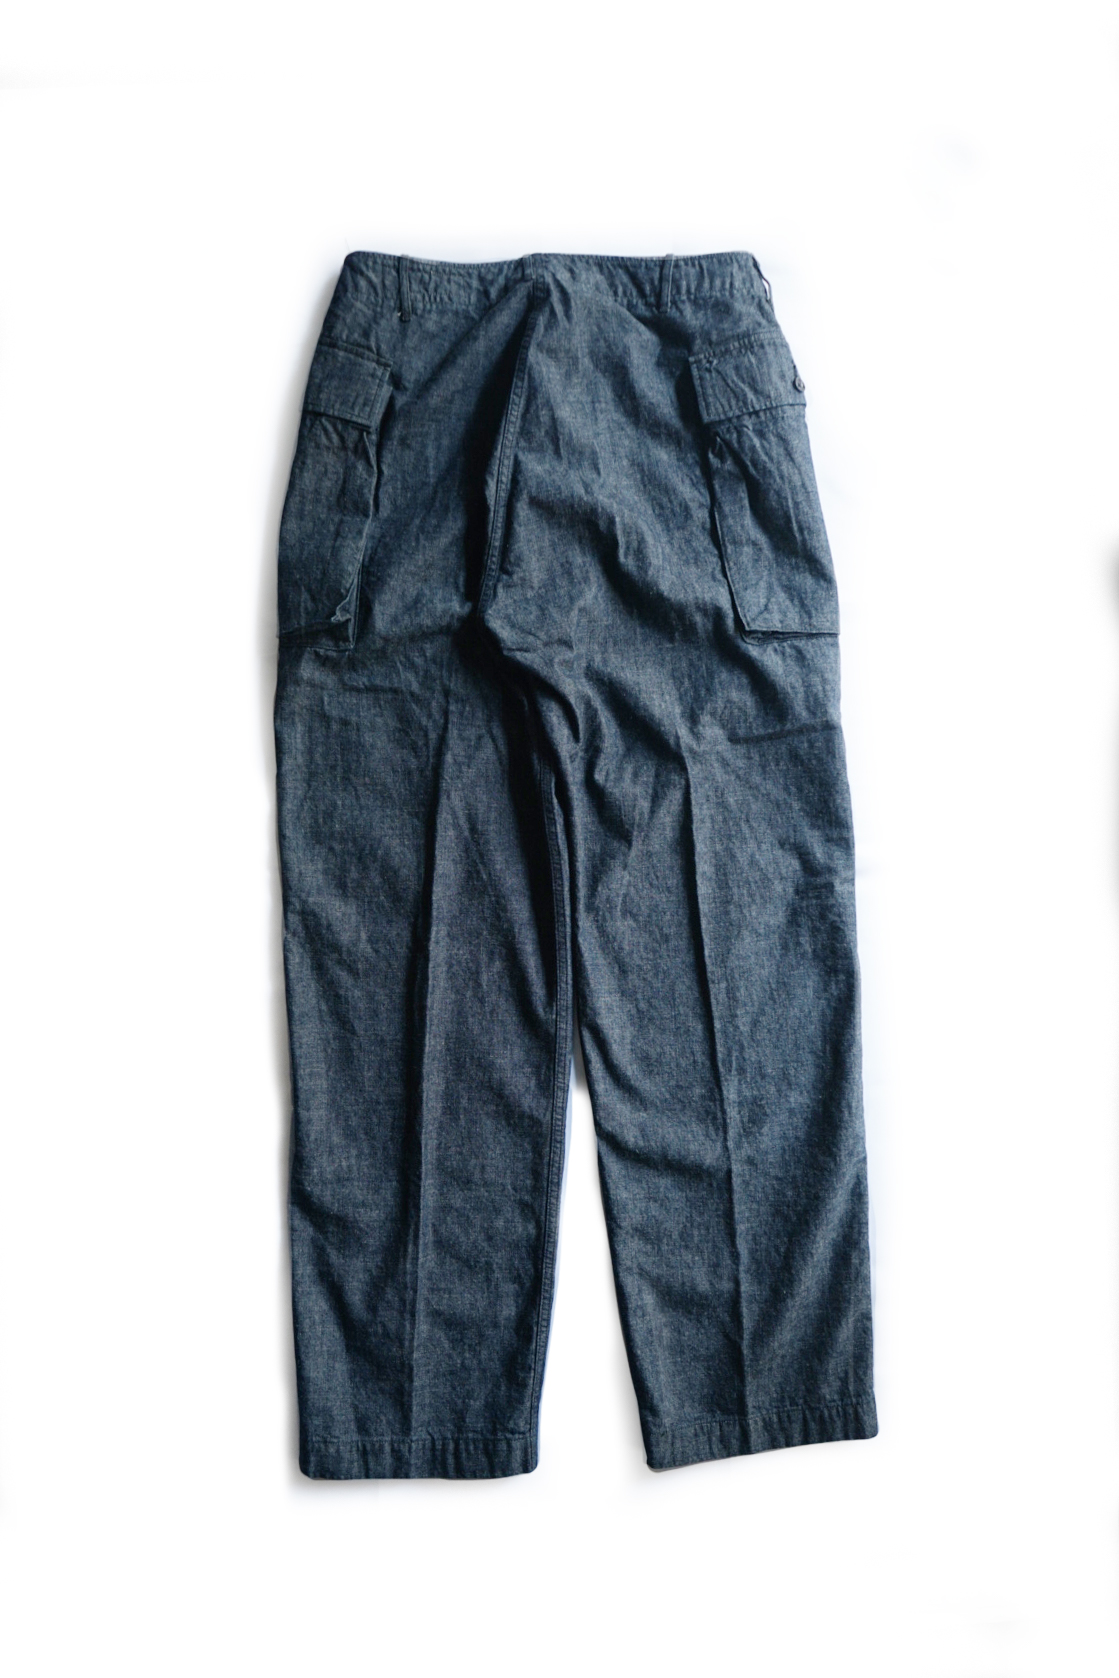 43 Cargo Pants Dungaree Cotton Linen Indigo